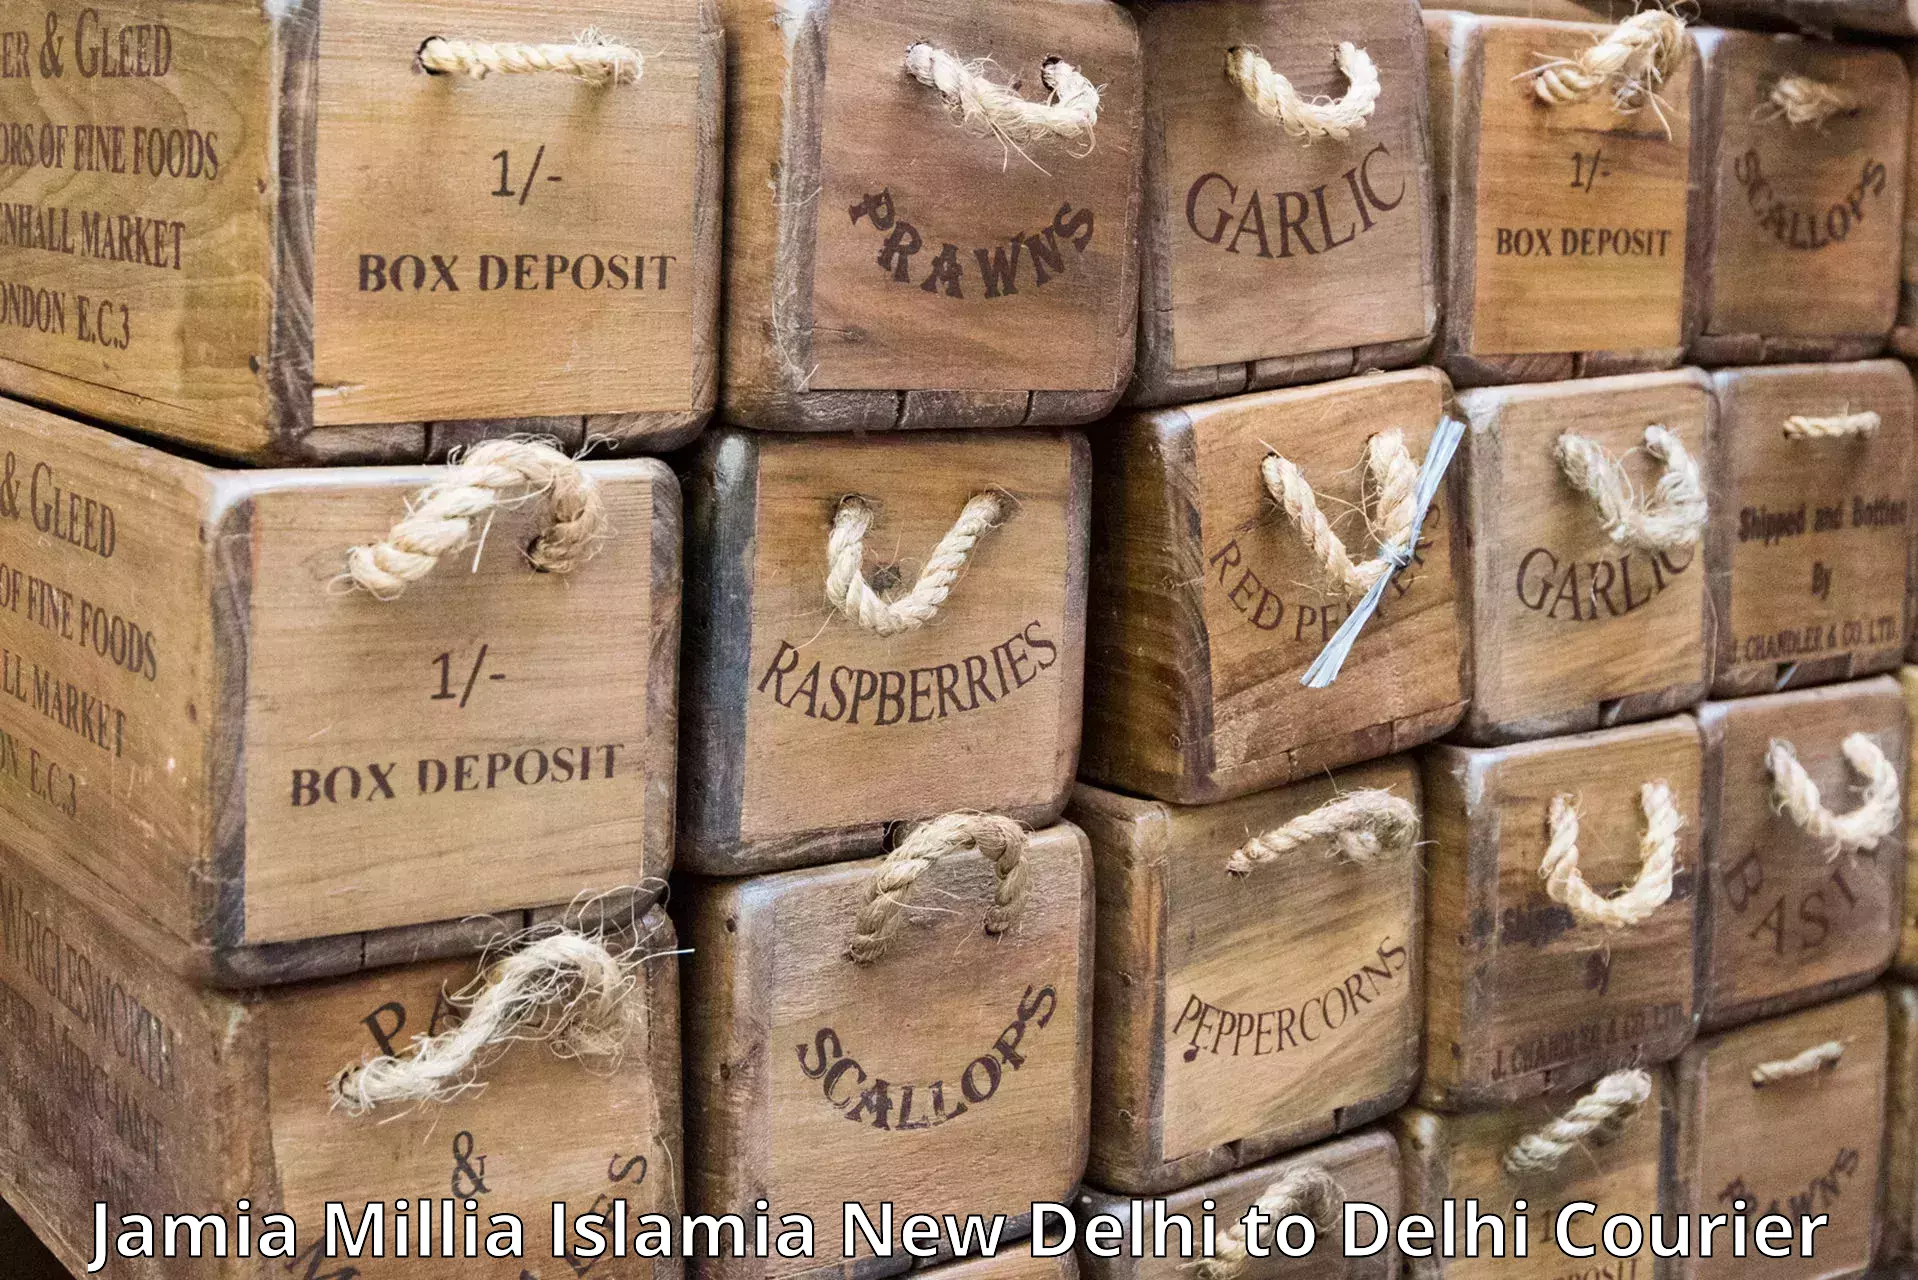 Courier dispatch services Jamia Millia Islamia New Delhi to Jamia Millia Islamia New Delhi